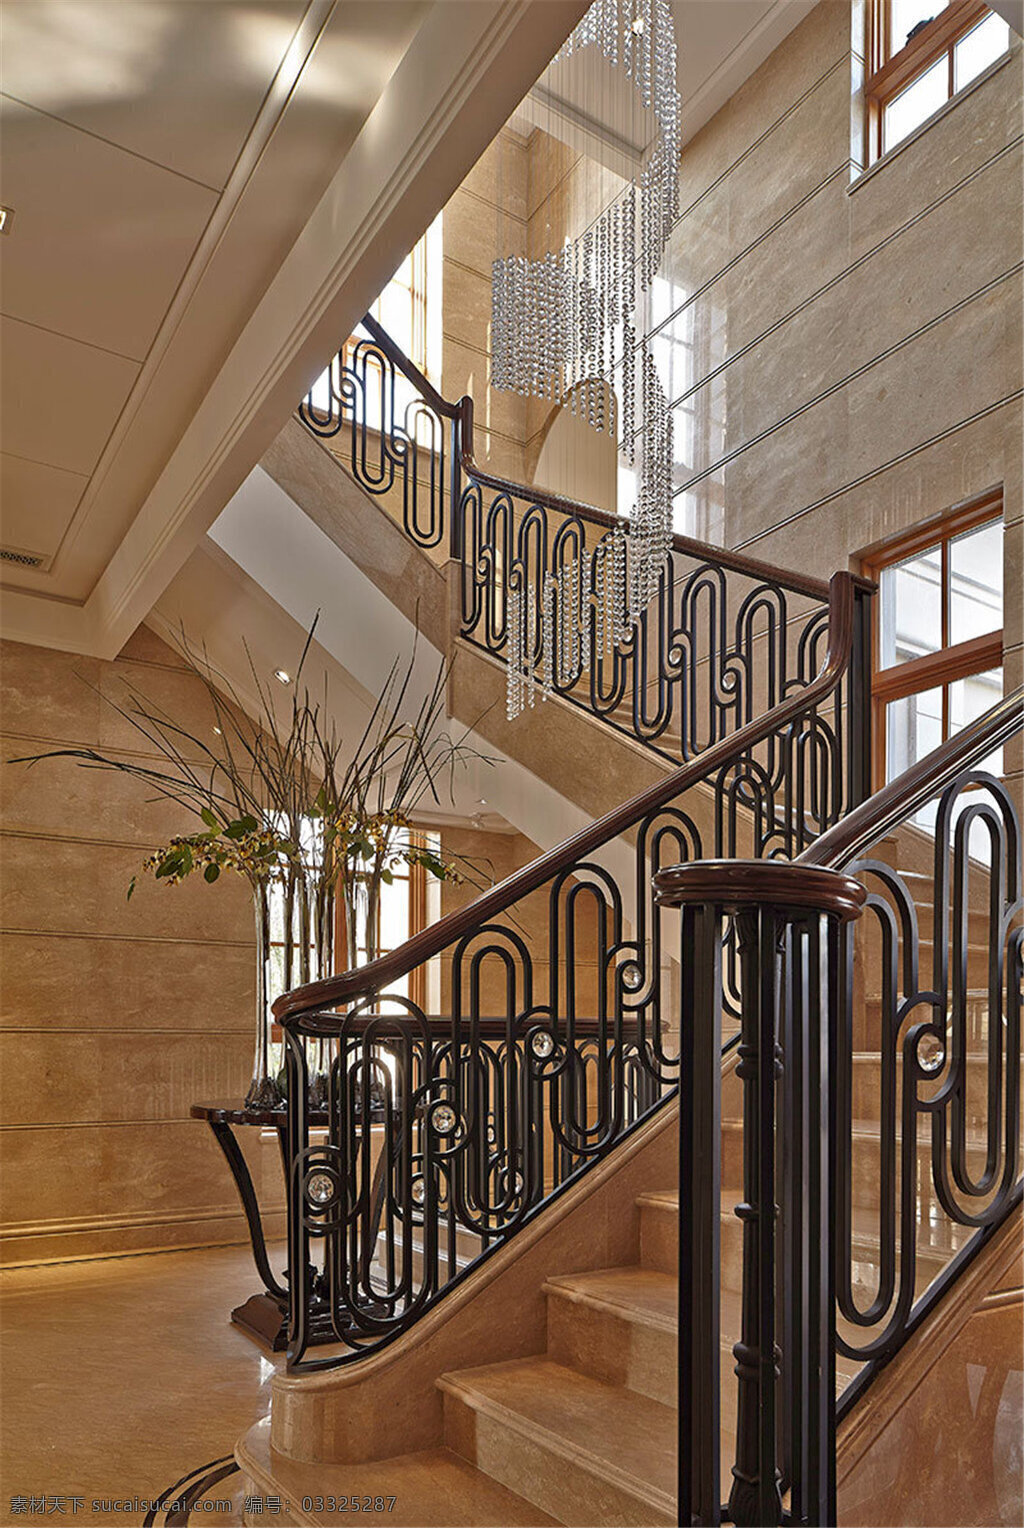 别墅 室内 楼梯 装修 效果图 铁艺栏杆 大理石台阶 清新园艺 大空间 暖色调